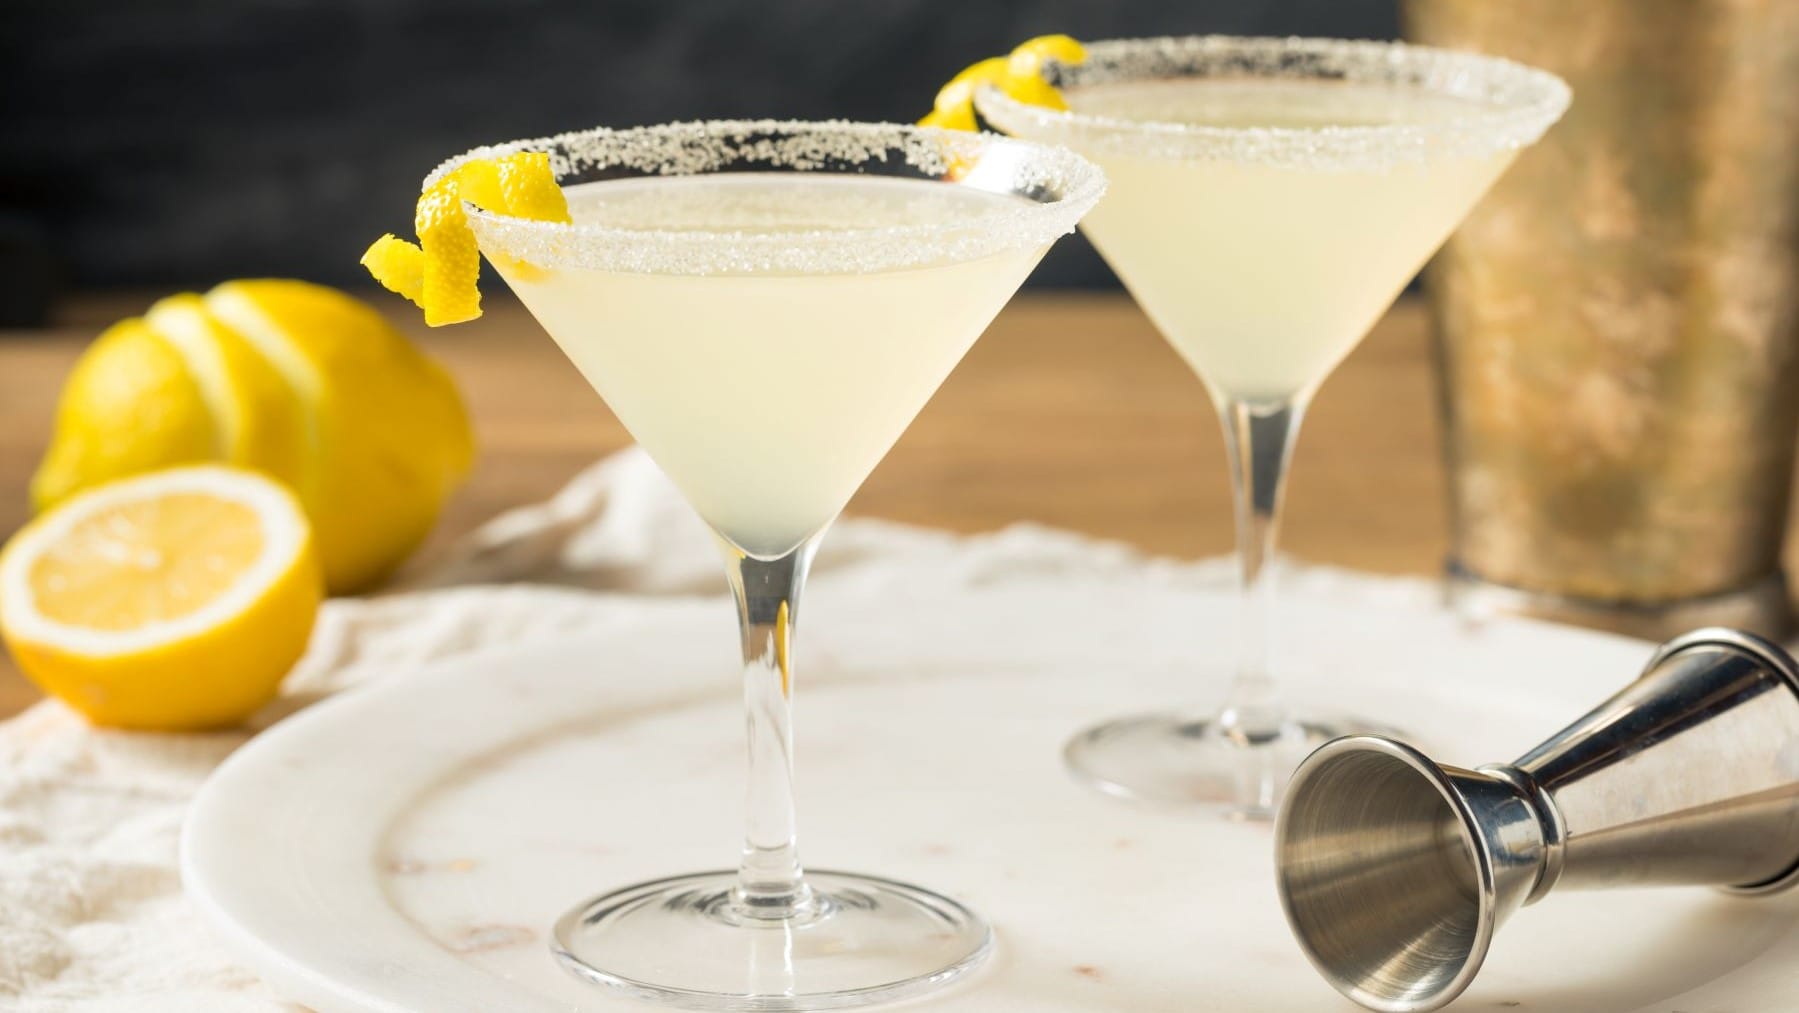 Zwei Lemon Drop Martini mit Barmaß auf hellem Teller, Tuch und Holztisch. Im Hintergrund Shaker und Zitronen. Frontalaufnahme.